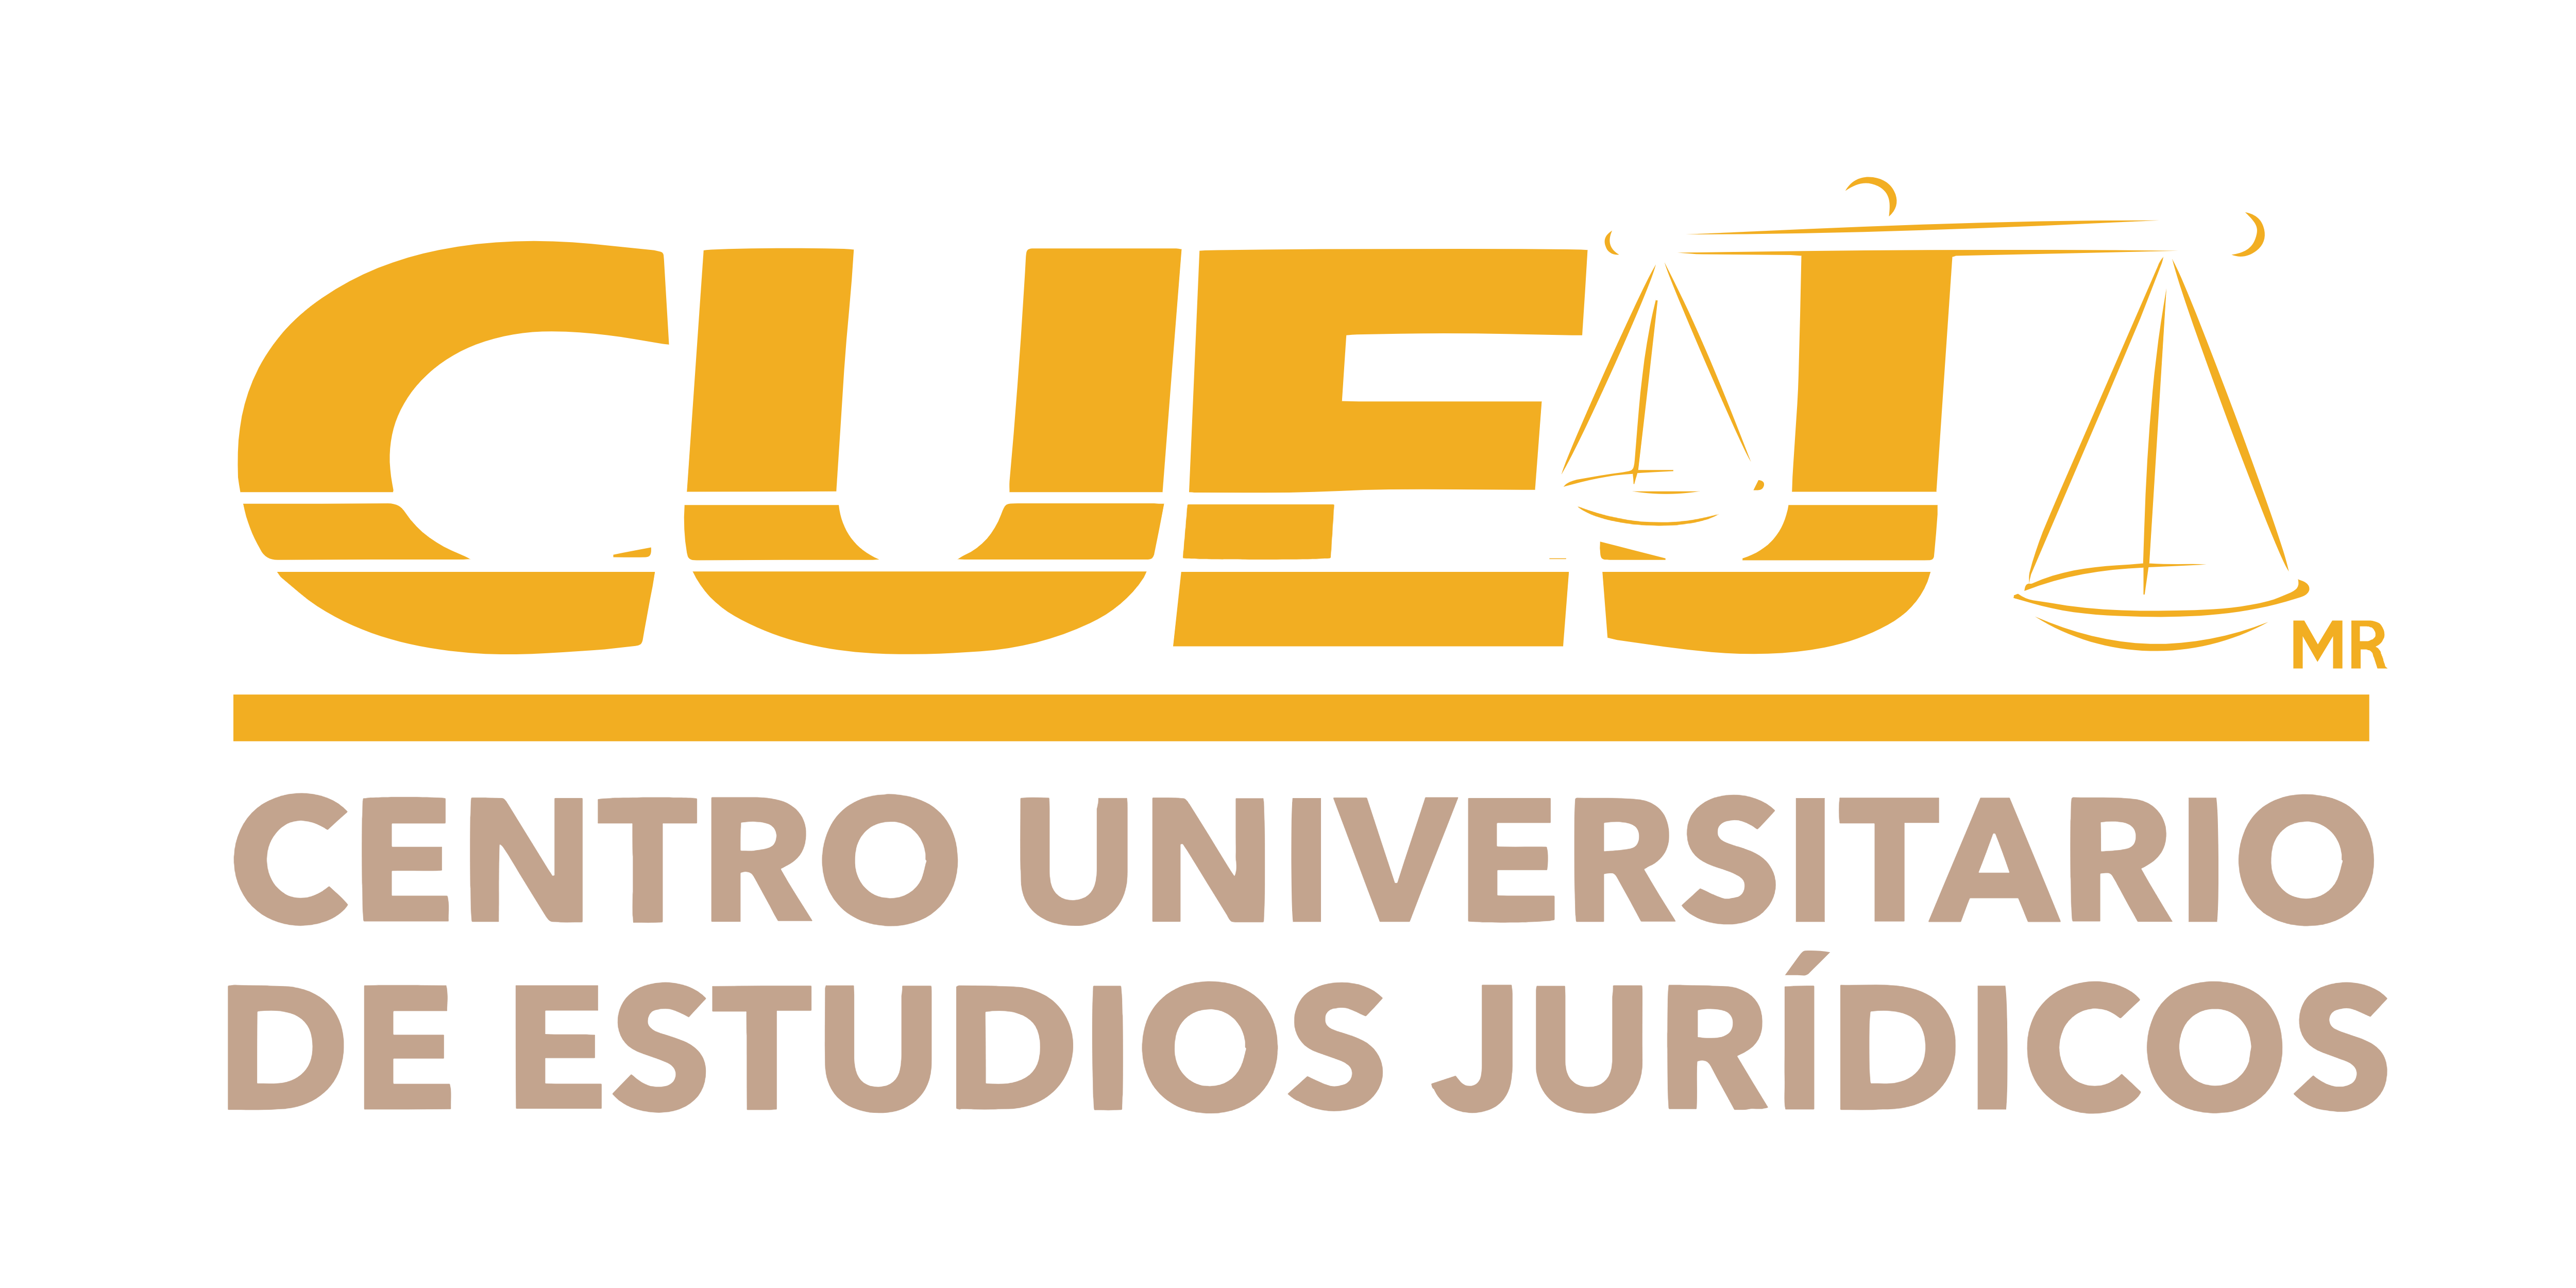 CENTRO UNIVERSITARIO DE ESTUDIOS JURÍDICOS